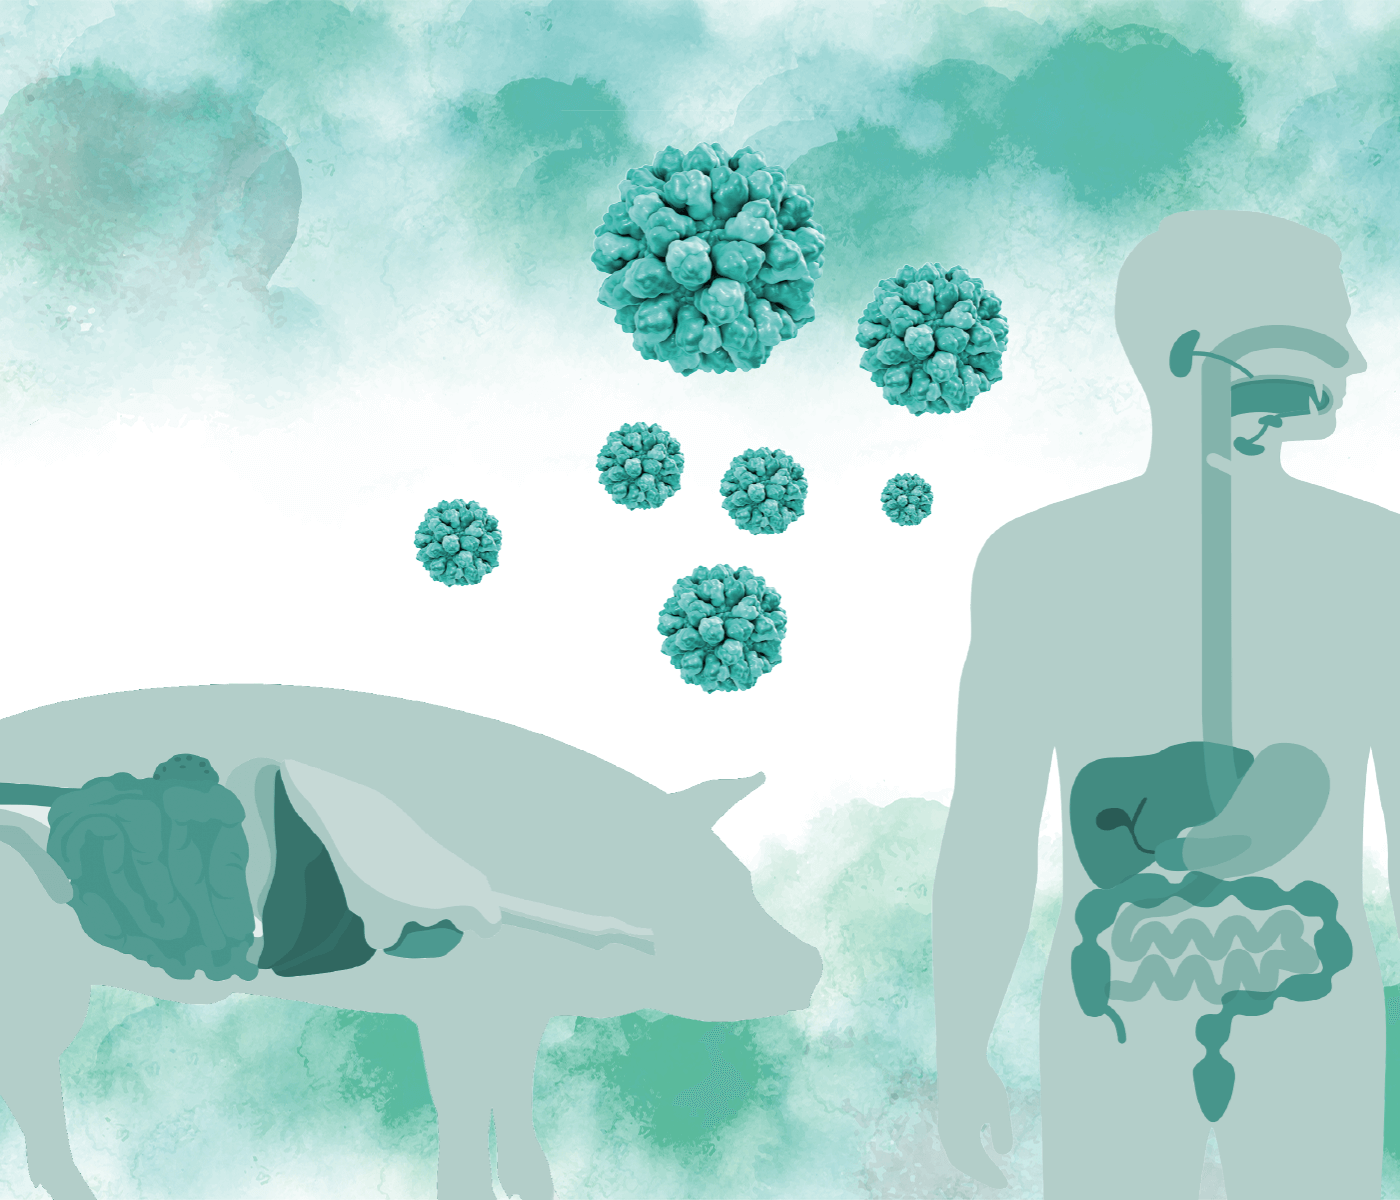 Norovirus porcino: de patógeno en el olvido a potencial agente zoonótico